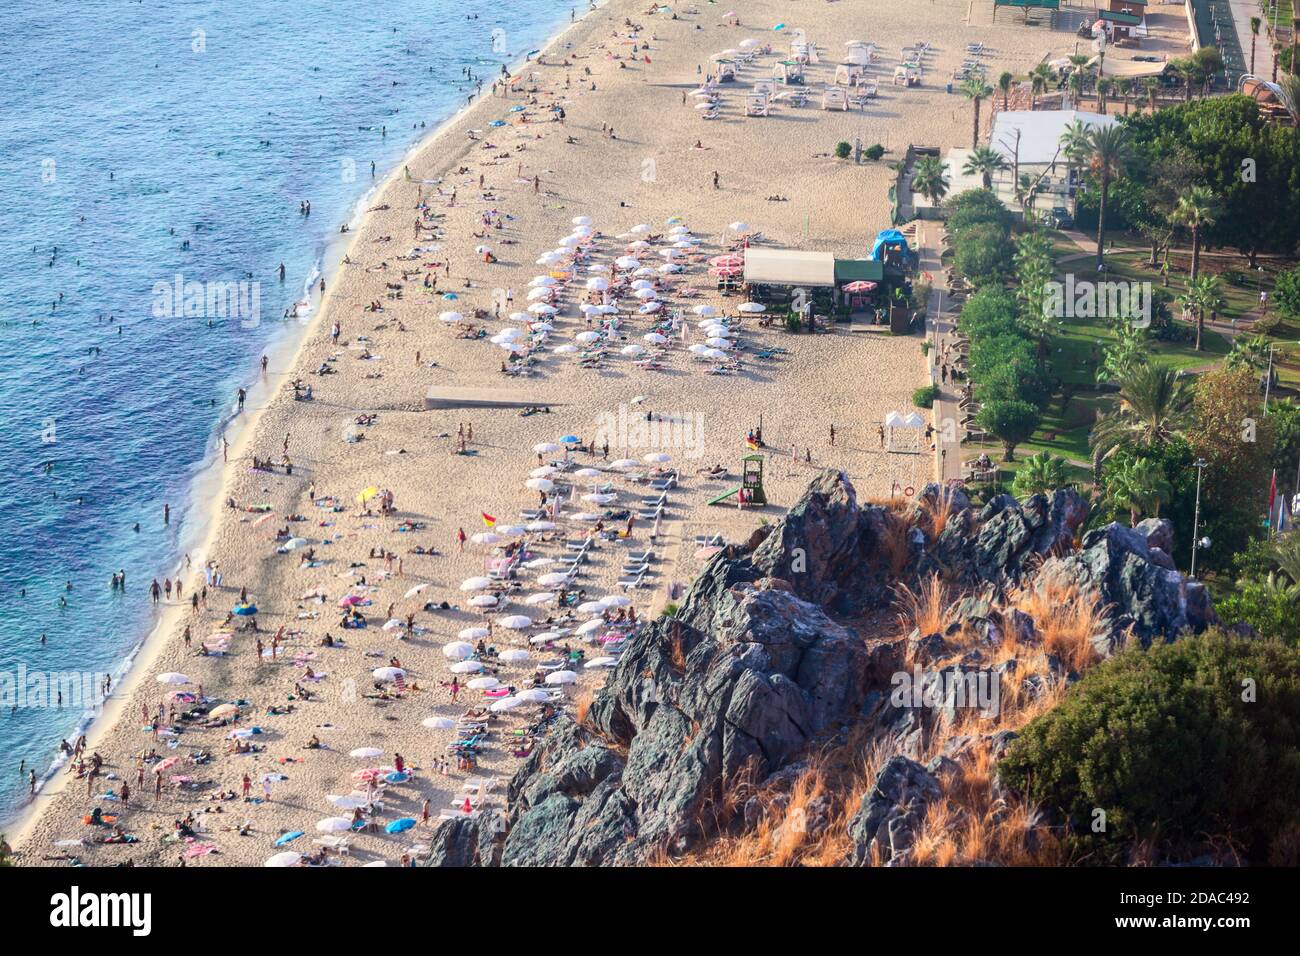 Vista aerea sulla spiaggia di Kleopatra, la città di Alanya, Turchia. Linea d'acqua con costa sabbiosa. Il fuoco è sulle rocce Foto Stock